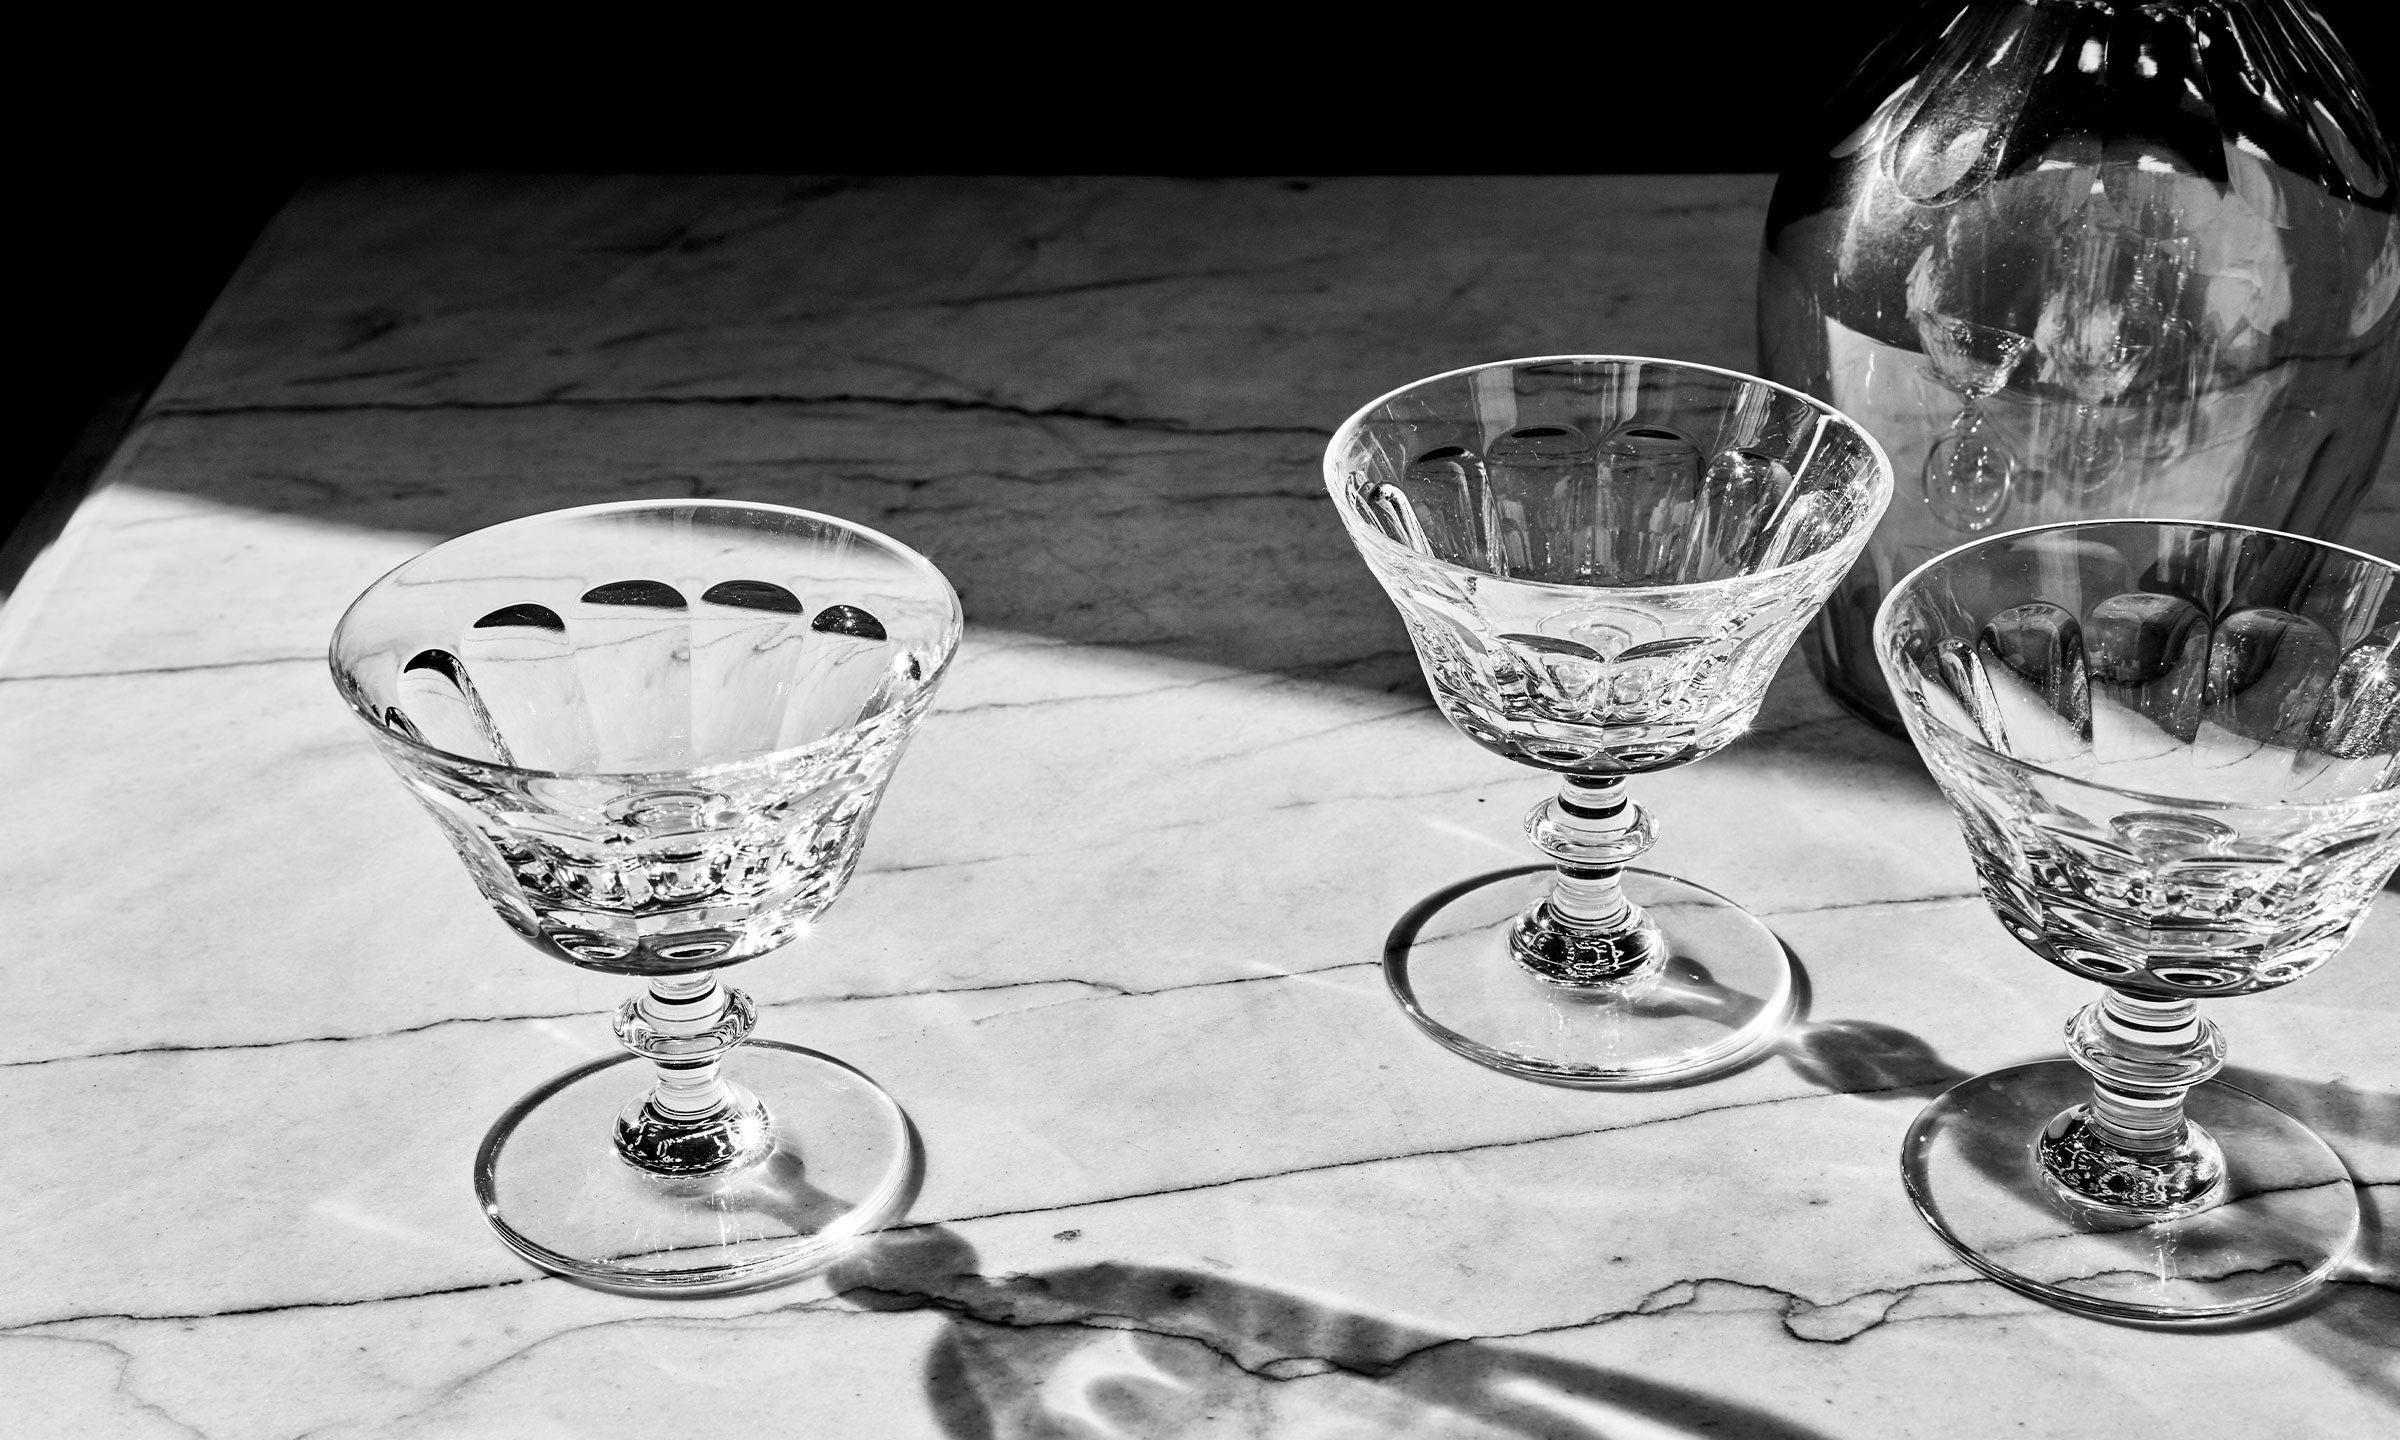 Daum - Royale De Champagne Louis Vuitton Water Goblet - Ajka Crystal